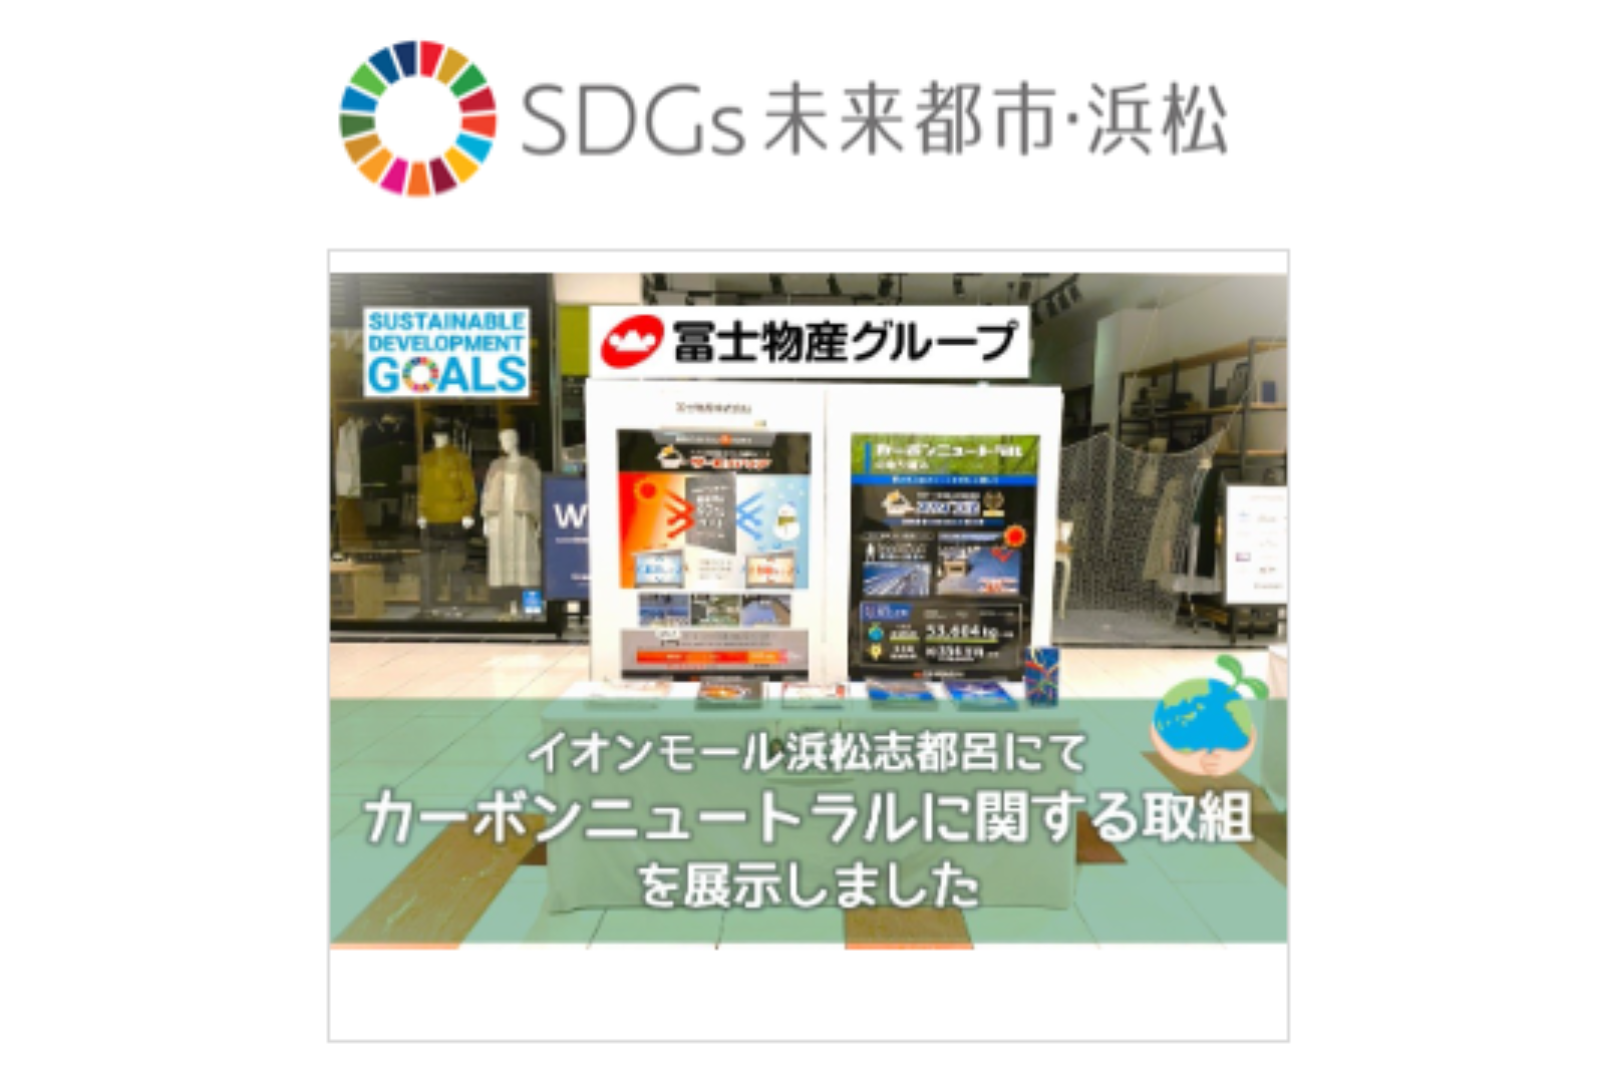 浜松市SDGsプラットフォームに活動報告を掲載していただきました